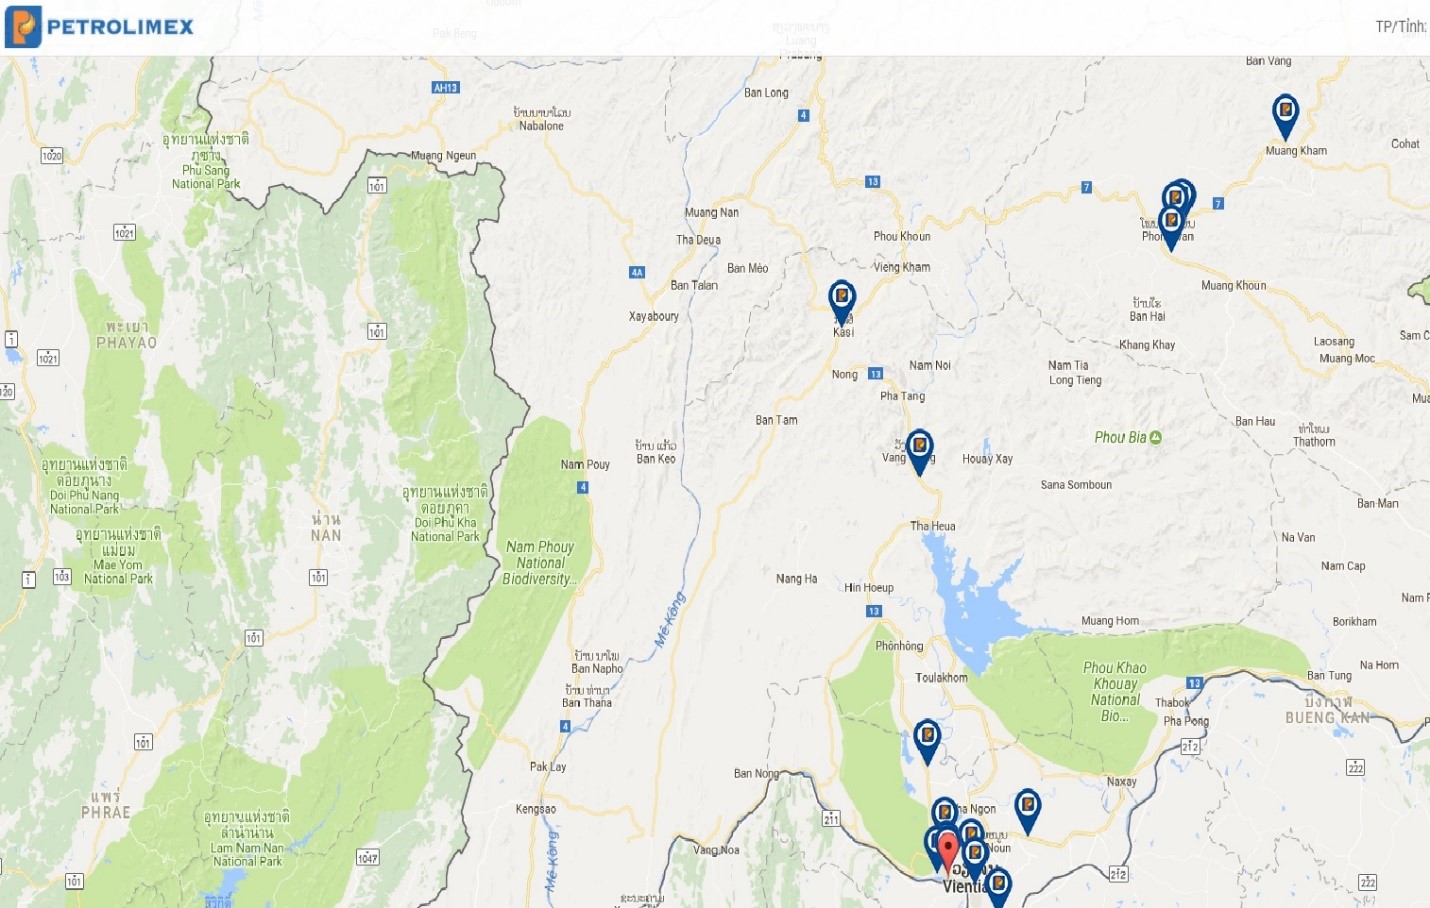 CHXD Petrolimex tại Lào đã có trên Google map từ 19/8